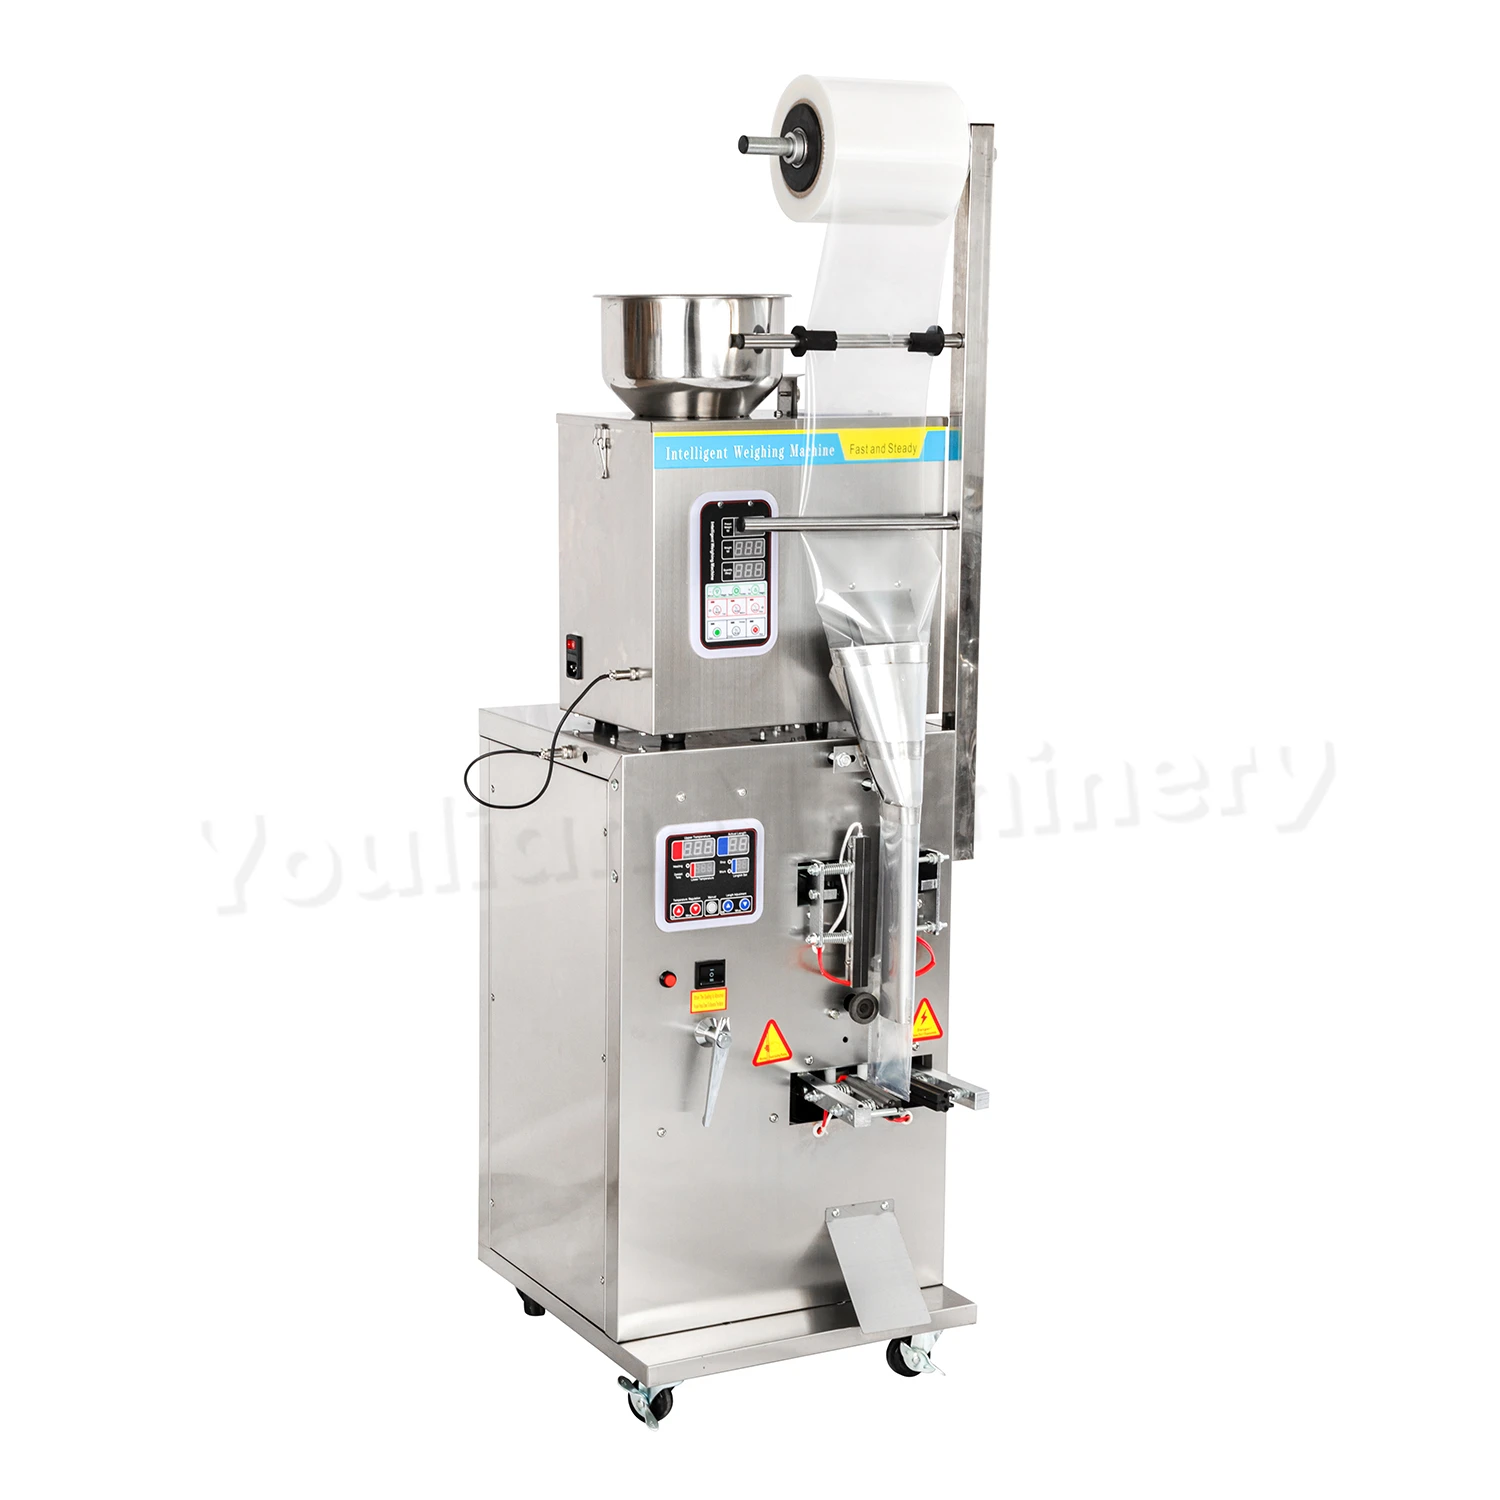 FZL-100 Automatic Small Vertical Sachets Spice Powder Coffee Grain Flour Tea Powder Bag Packing Machine